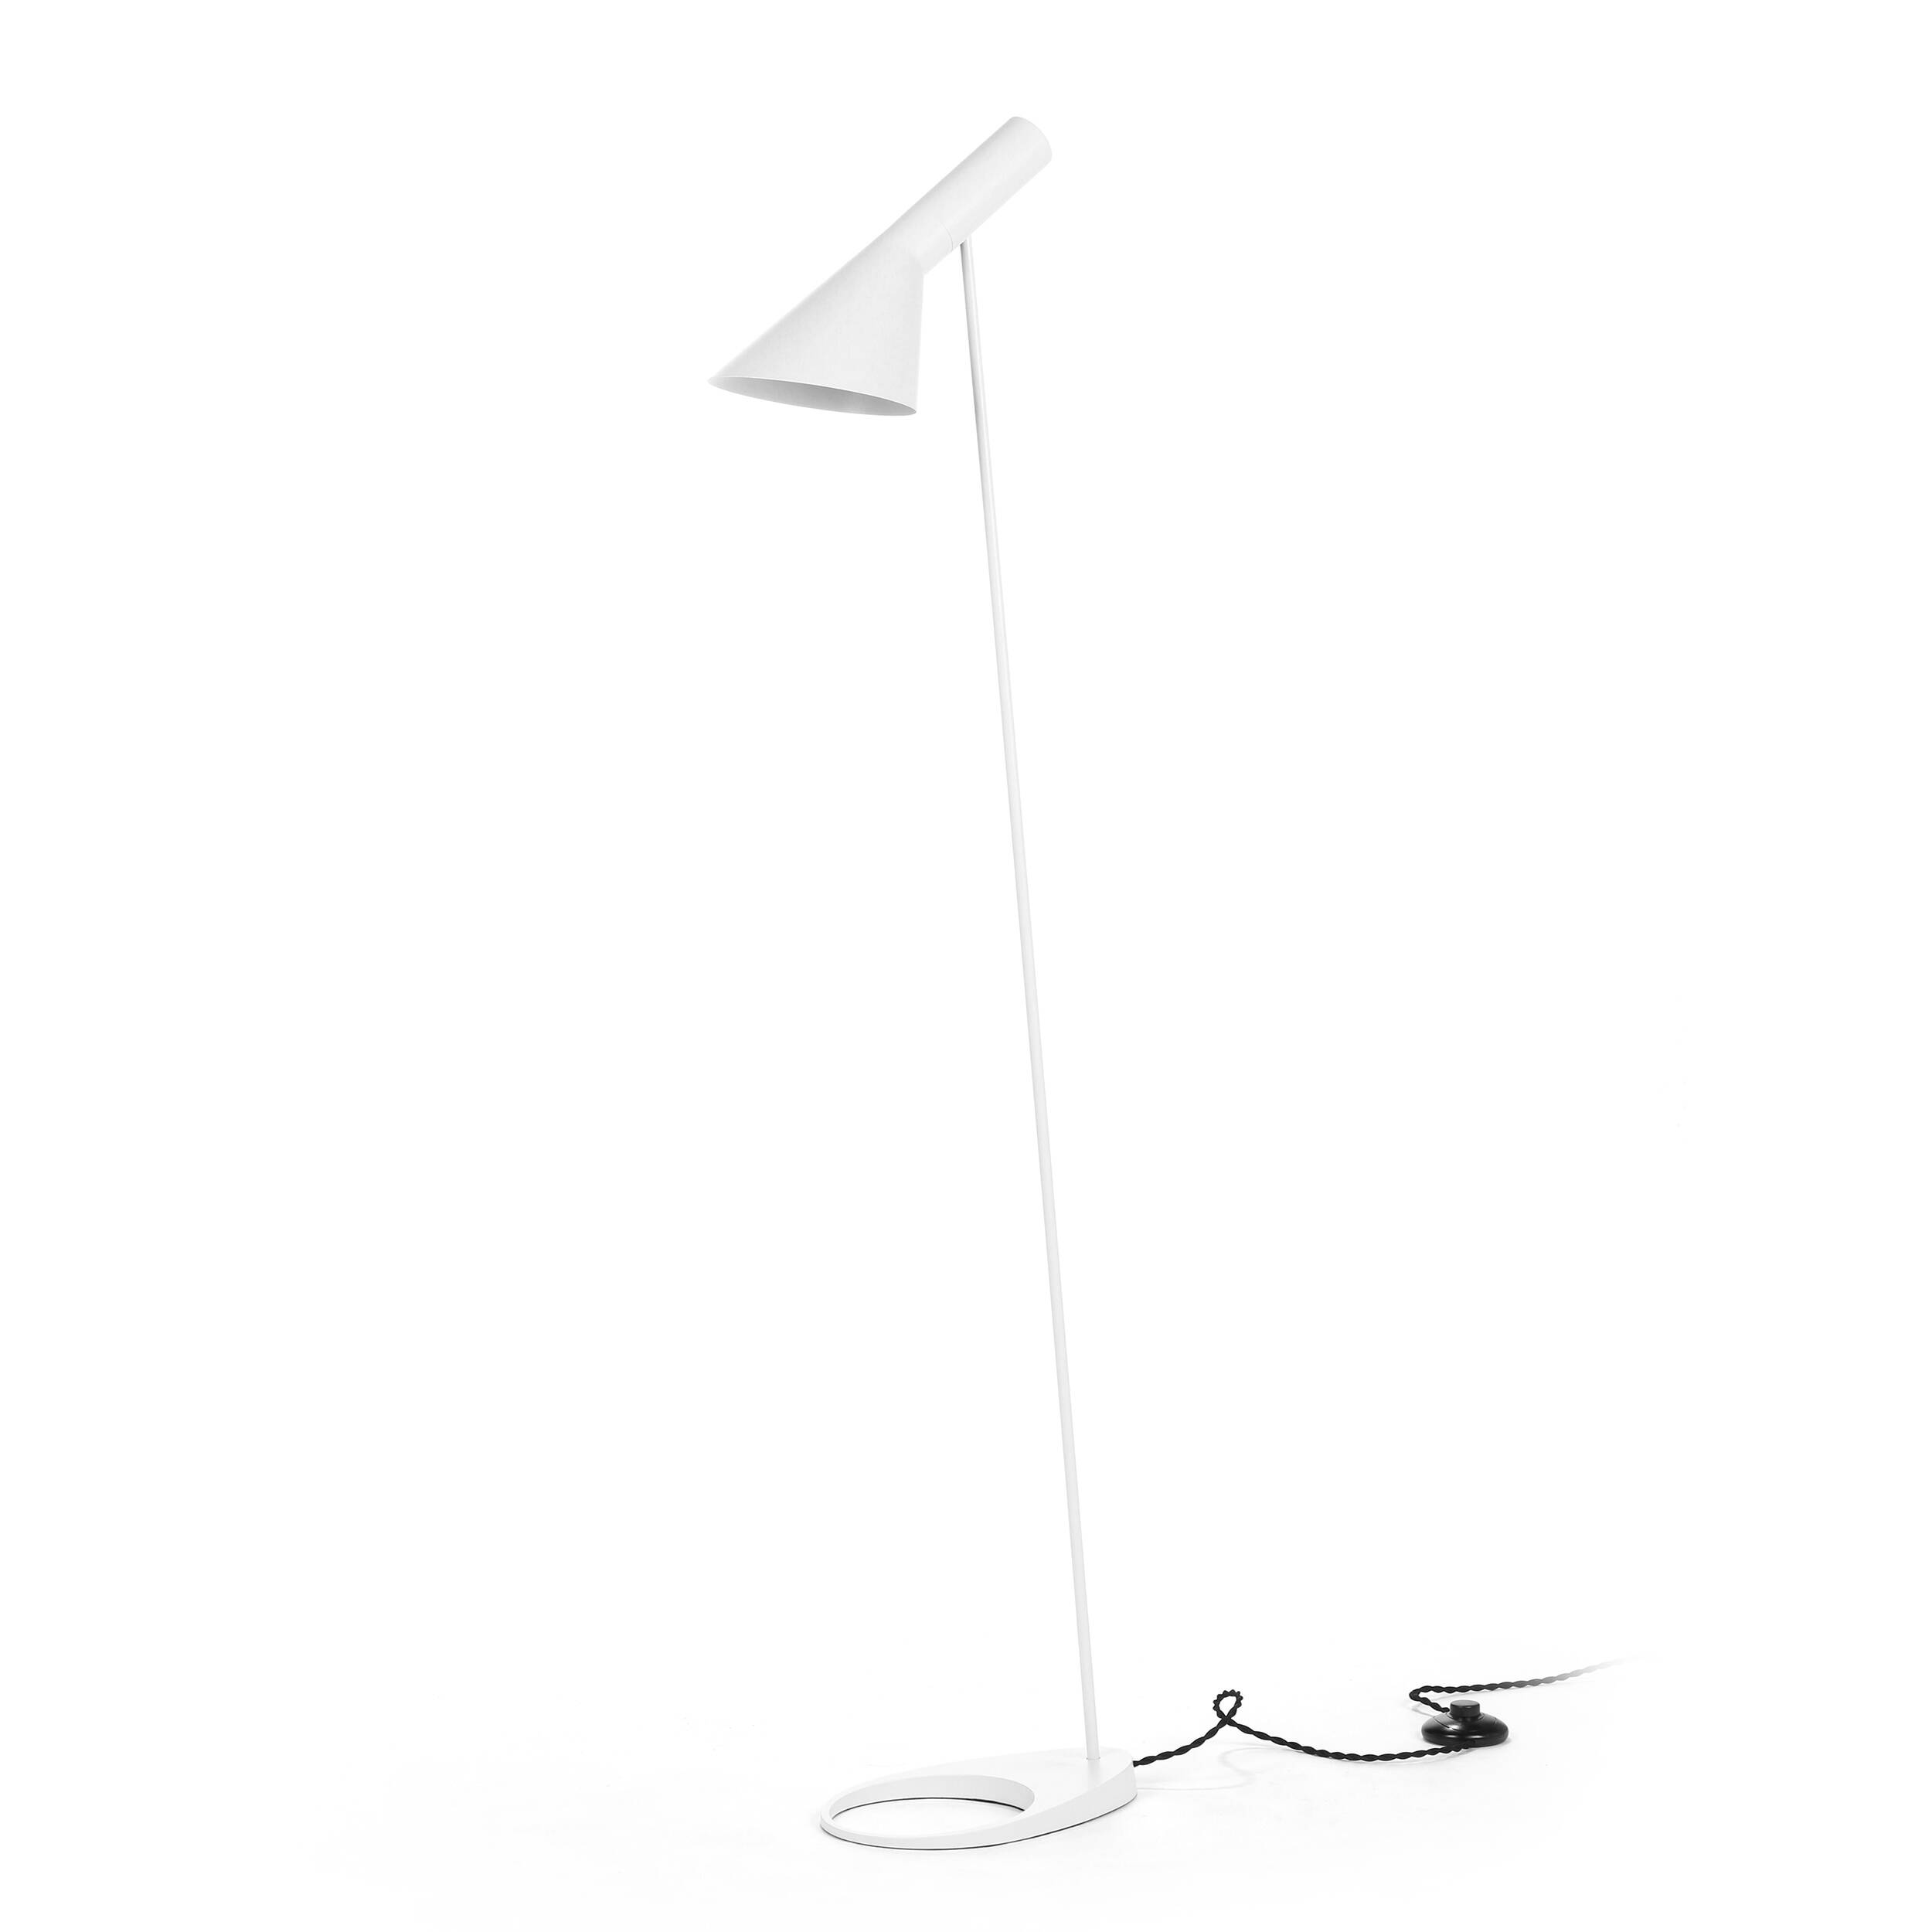 Напольный светильник AJ 2 купить в интернет-магазине дизайнерской мебели Cosmorelax.Ru